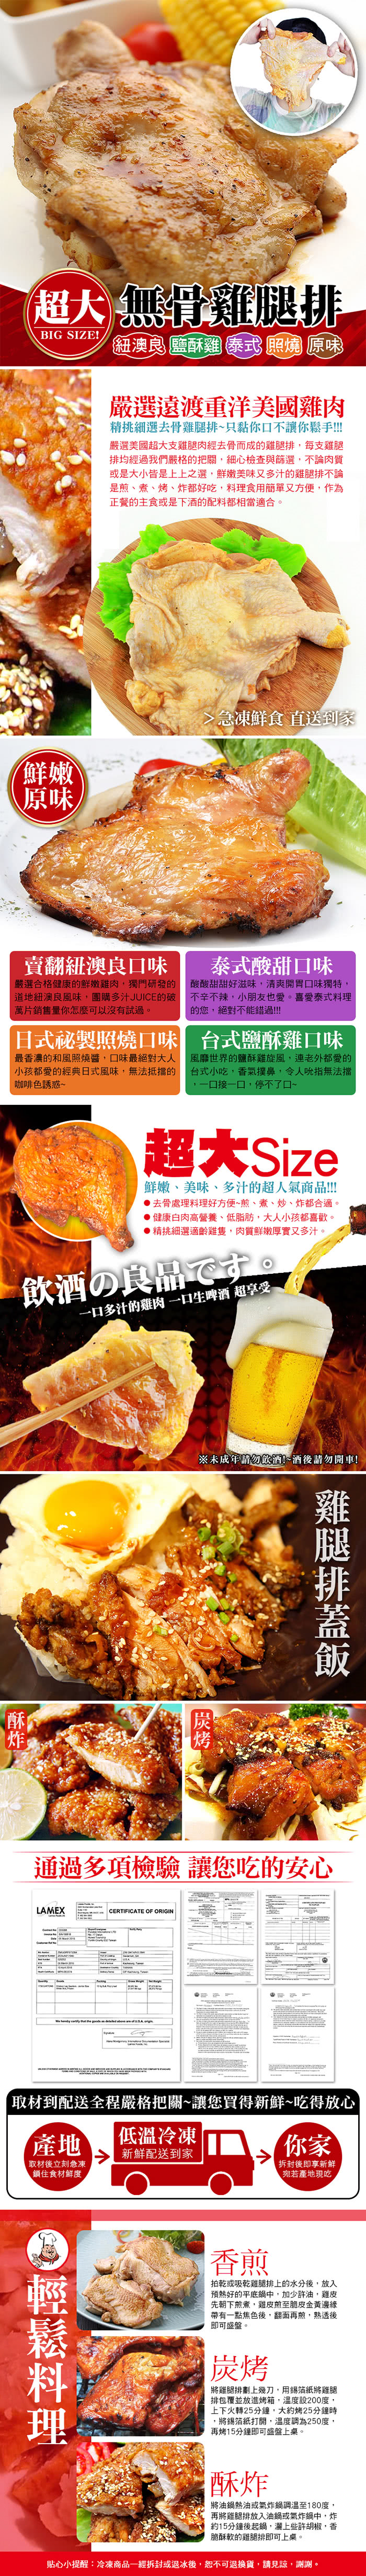 【賀鮮生】五口味超大無骨雞腿排8片(230g/片)